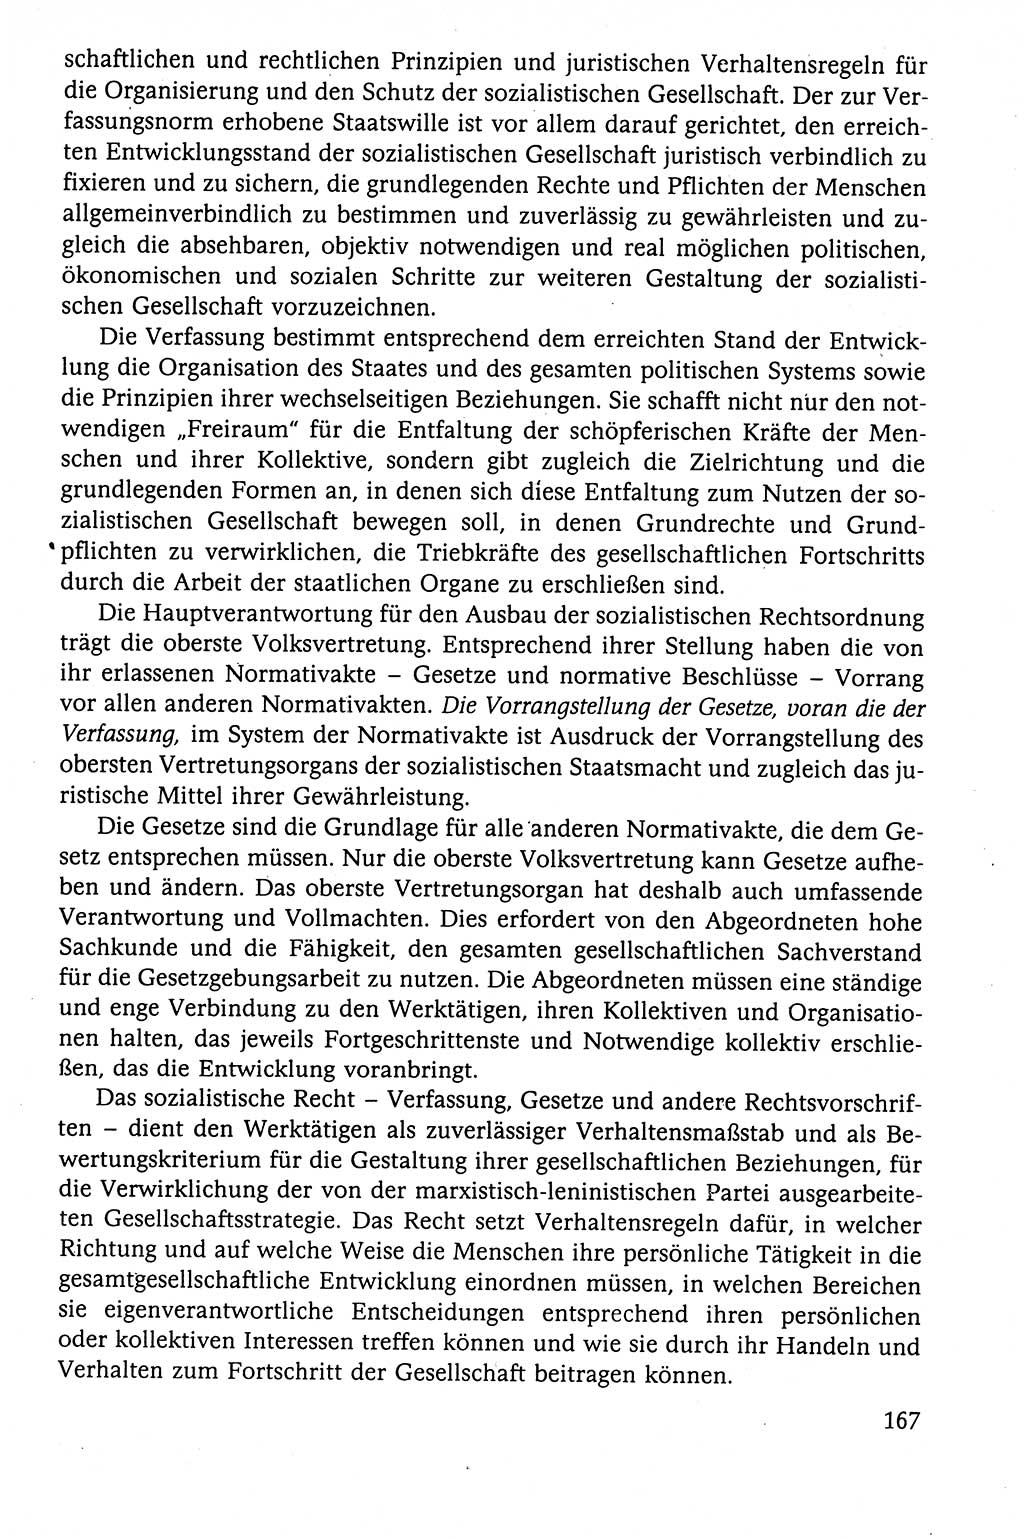 Der Staat im politischen System der DDR (Deutsche Demokratische Republik) 1986, Seite 167 (St. pol. Sys. DDR 1986, S. 167)